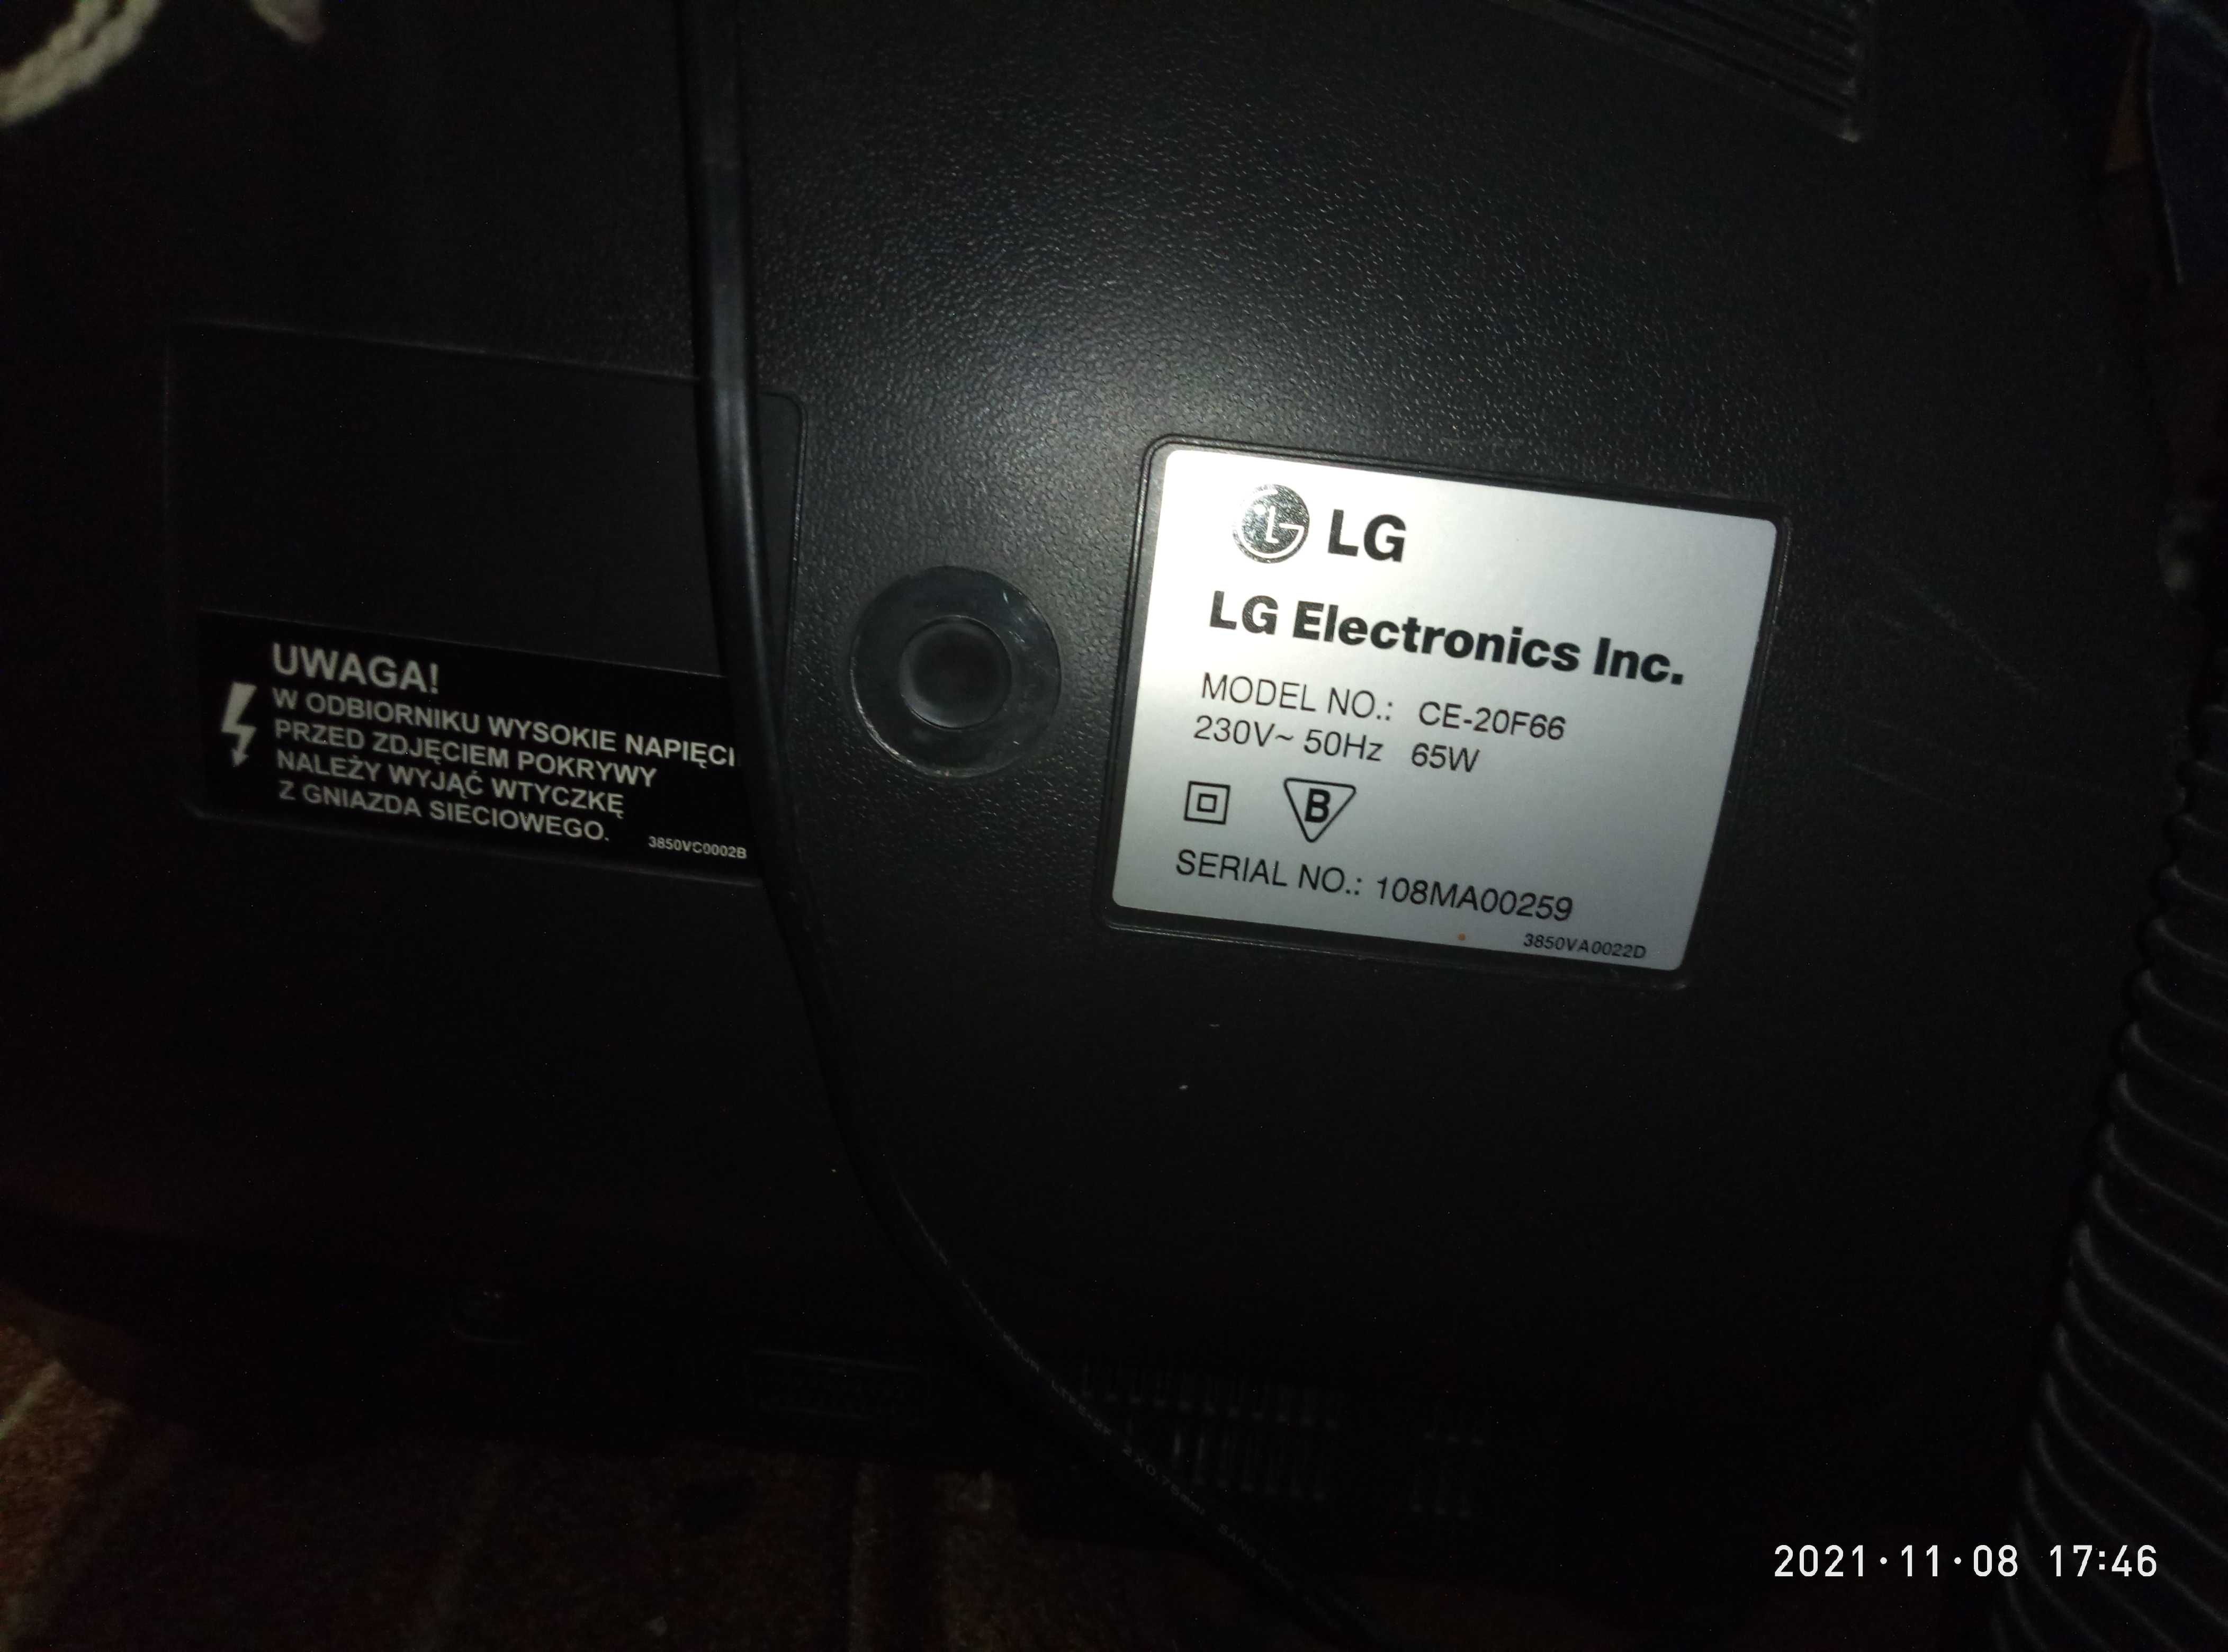 телевизор LG Electronics Inc. СЕ-20F66 модель 108МА00259